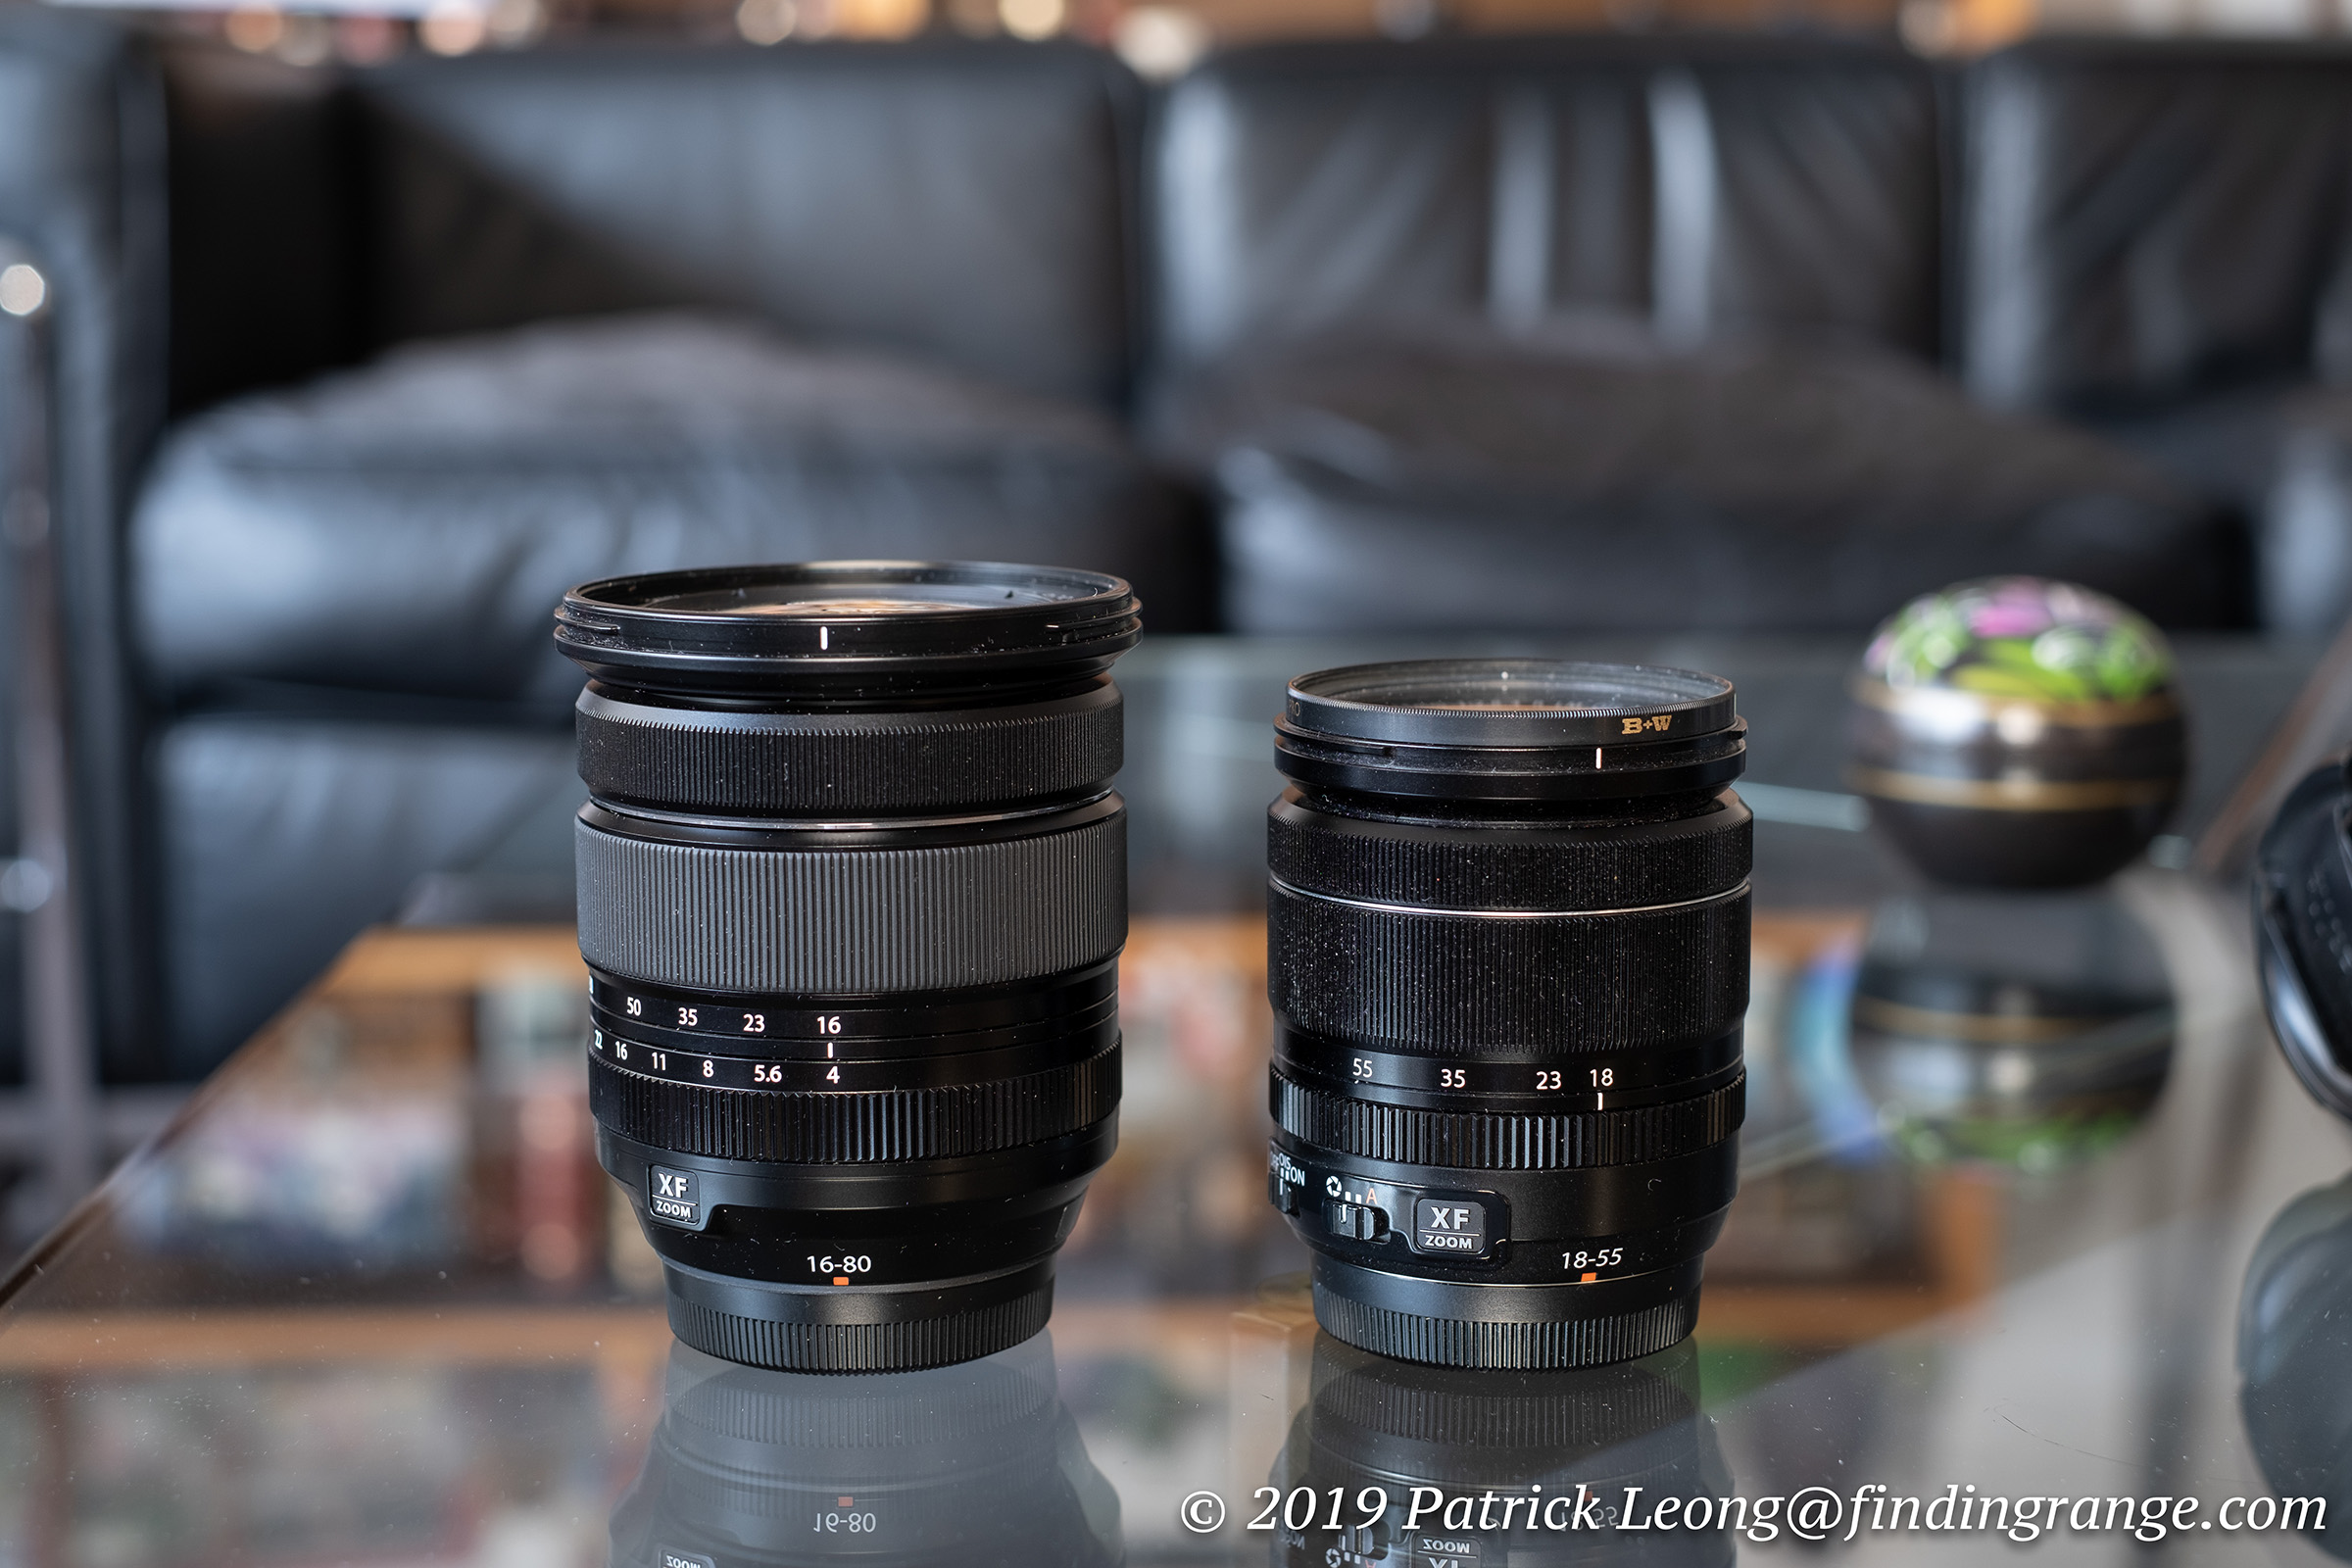 Fujifilm XF 16-80mm f4 R OIS WR Lens Review